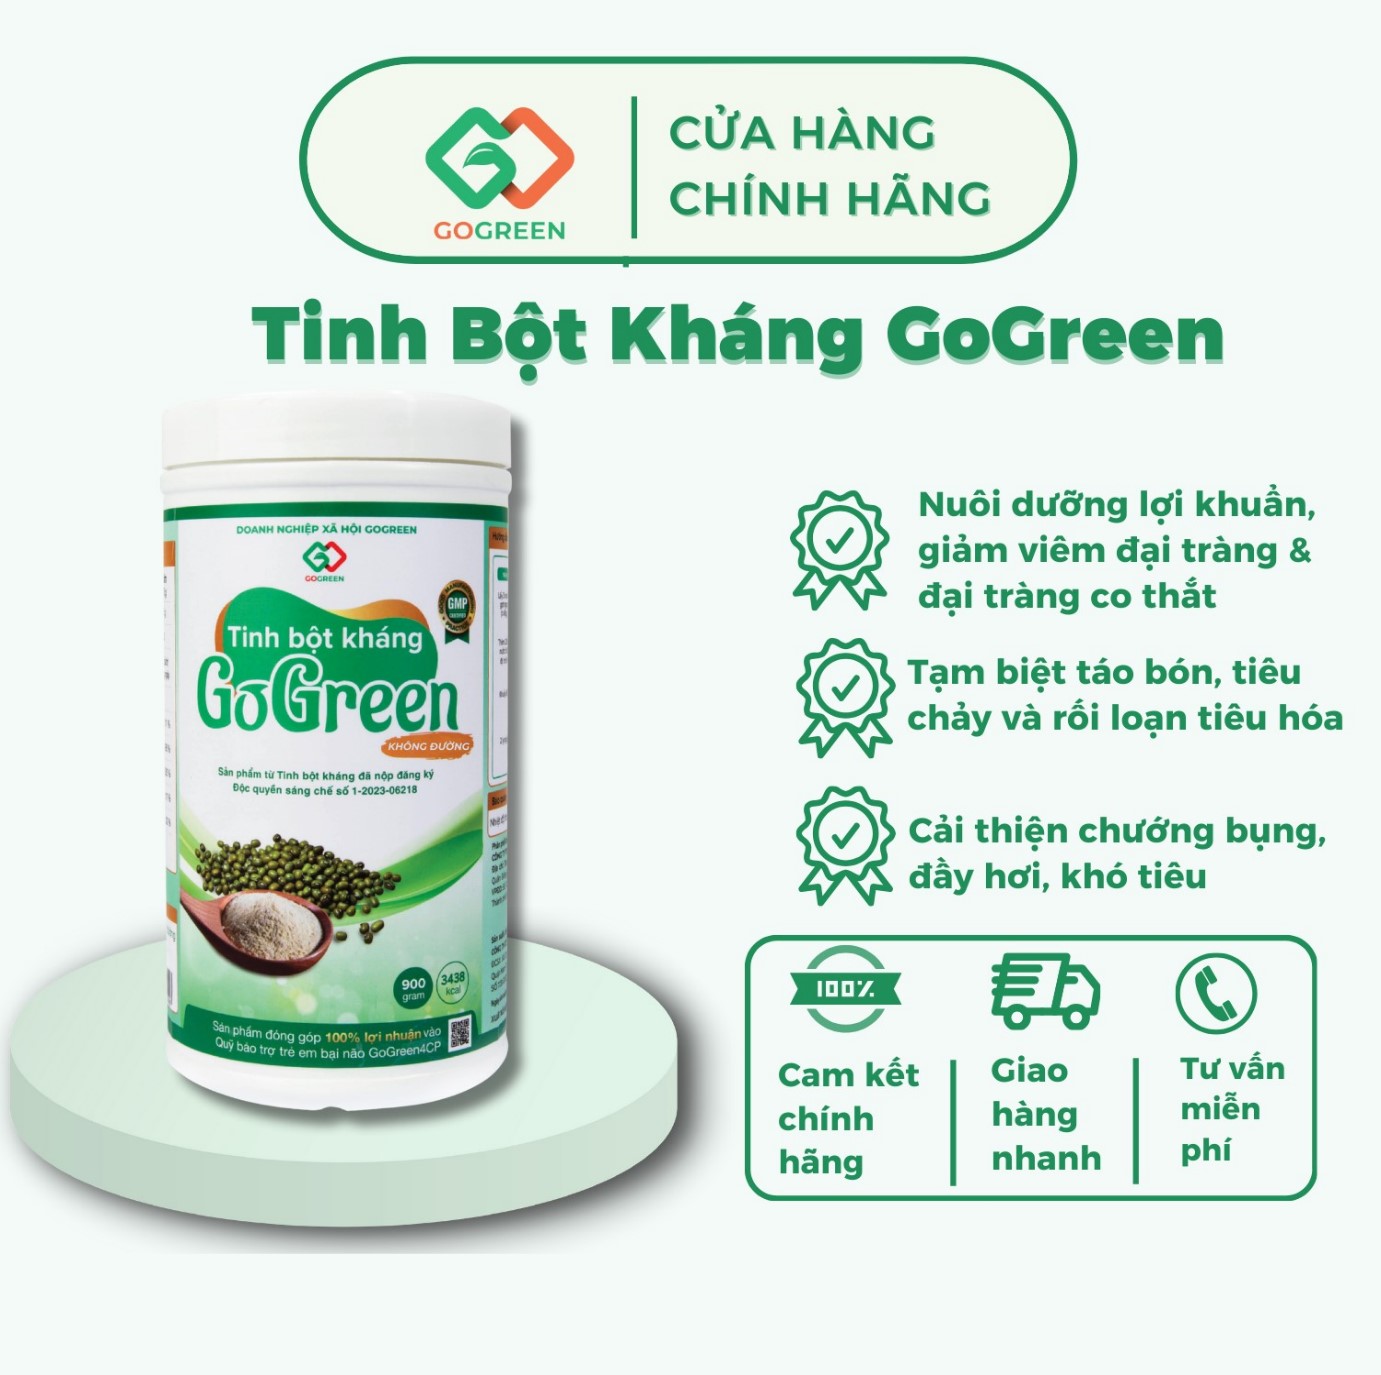 Thương hiệu Tinh Bột Kháng Dr. Ruột với sản phẩm Tinh bột kháng GoGreen Premium - Vì một Việt Nam không còn bệnh đường ruột! - ảnh 2